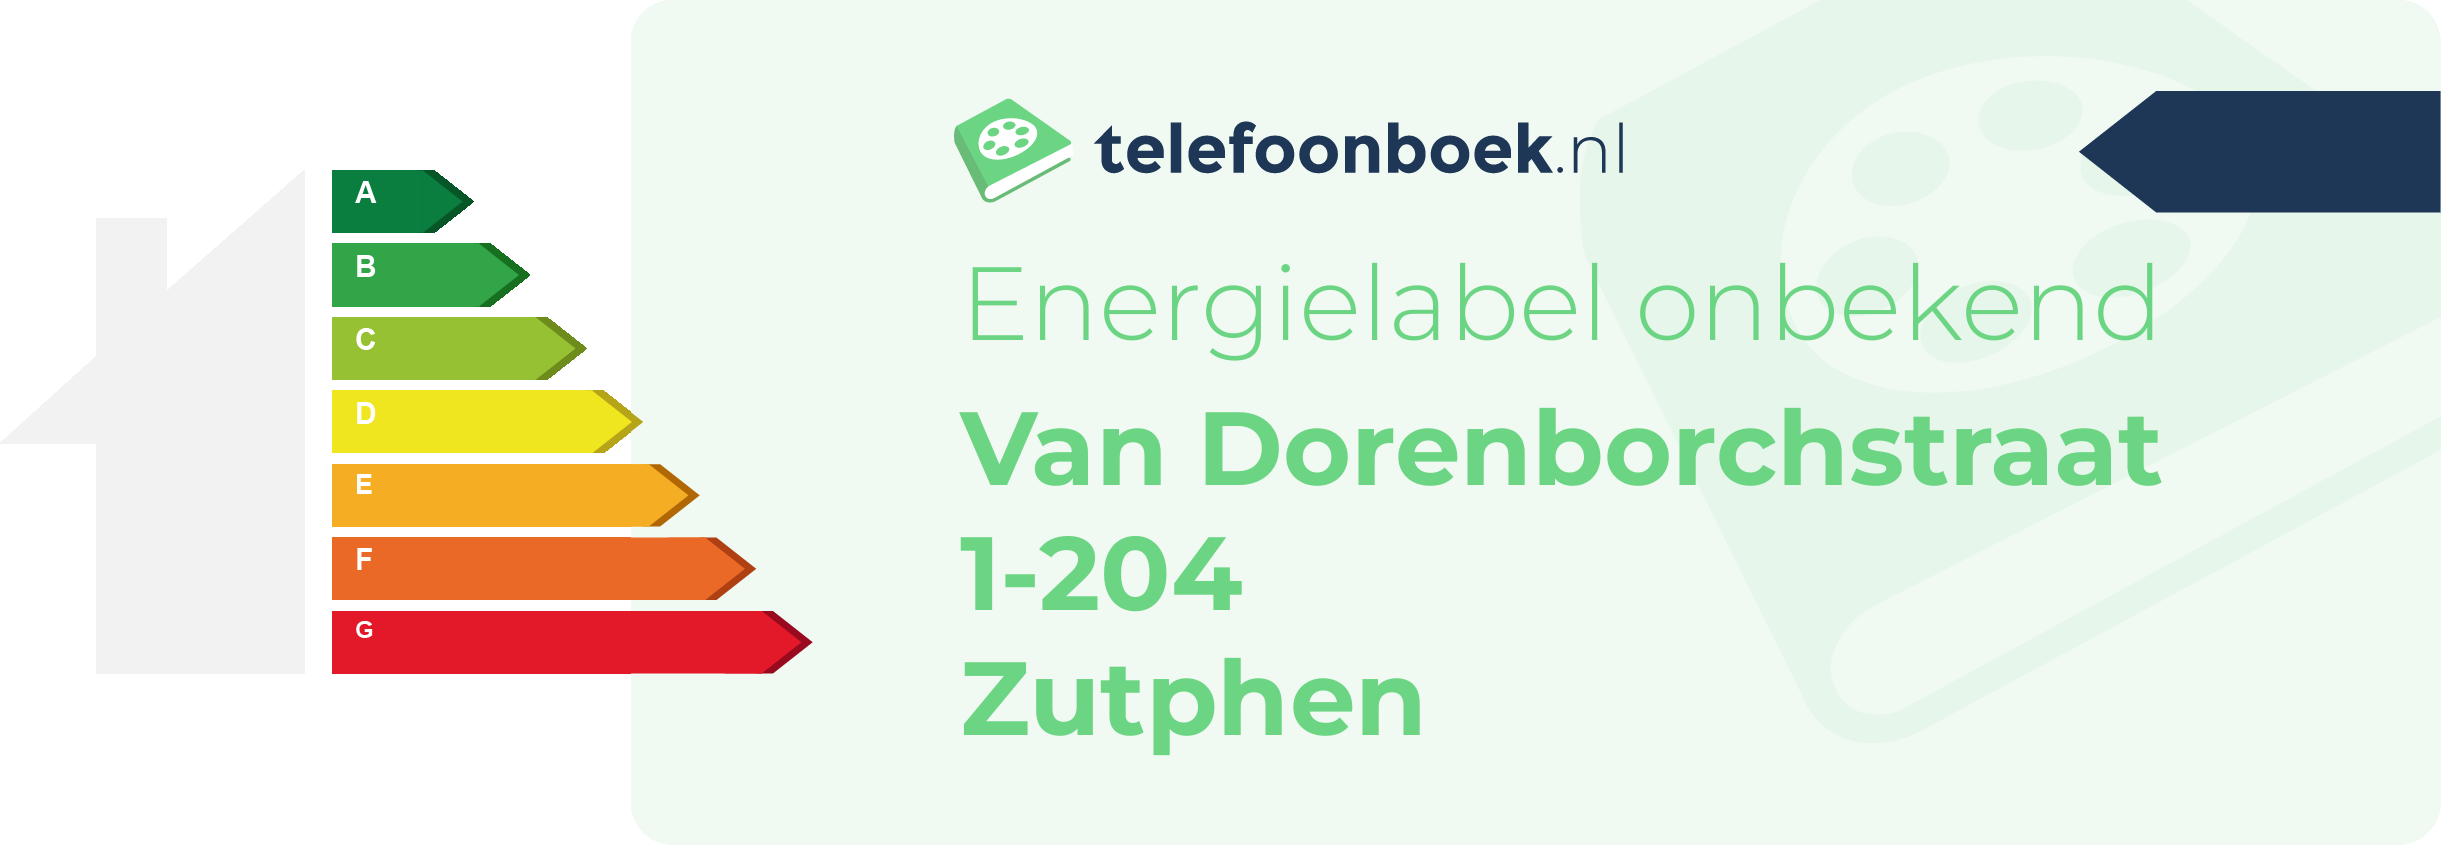 Energielabel Van Dorenborchstraat 1-204 Zutphen